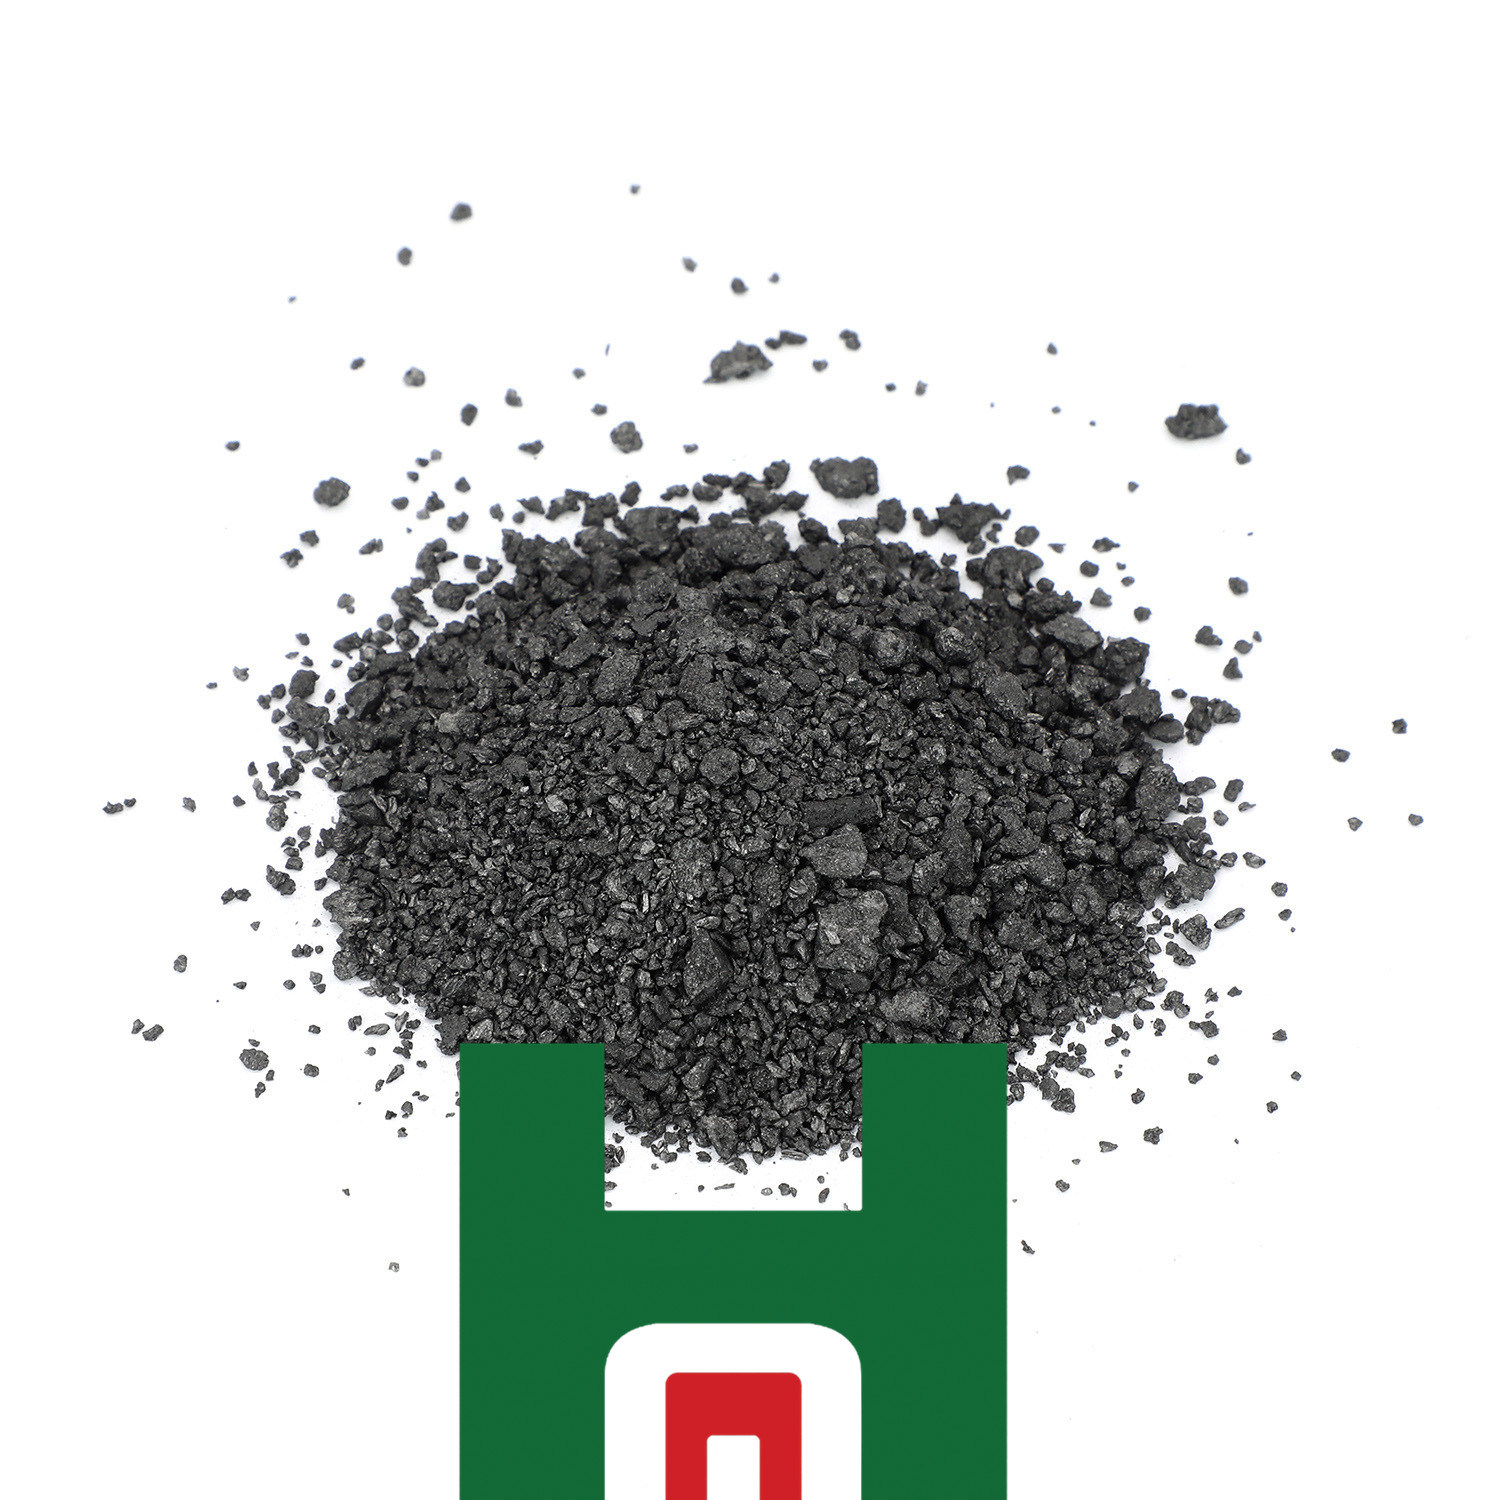 Dökümhane İçin Siyah Granül ve Yeşil Toz Metalurji Sınıfı Silisyum Karbür satın al,Dökümhane İçin Siyah Granül ve Yeşil Toz Metalurji Sınıfı Silisyum Karbür Fiyatlar,Dökümhane İçin Siyah Granül ve Yeşil Toz Metalurji Sınıfı Silisyum Karbür Markalar,Dökümhane İçin Siyah Granül ve Yeşil Toz Metalurji Sınıfı Silisyum Karbür Üretici,Dökümhane İçin Siyah Granül ve Yeşil Toz Metalurji Sınıfı Silisyum Karbür Alıntılar,Dökümhane İçin Siyah Granül ve Yeşil Toz Metalurji Sınıfı Silisyum Karbür Şirket,